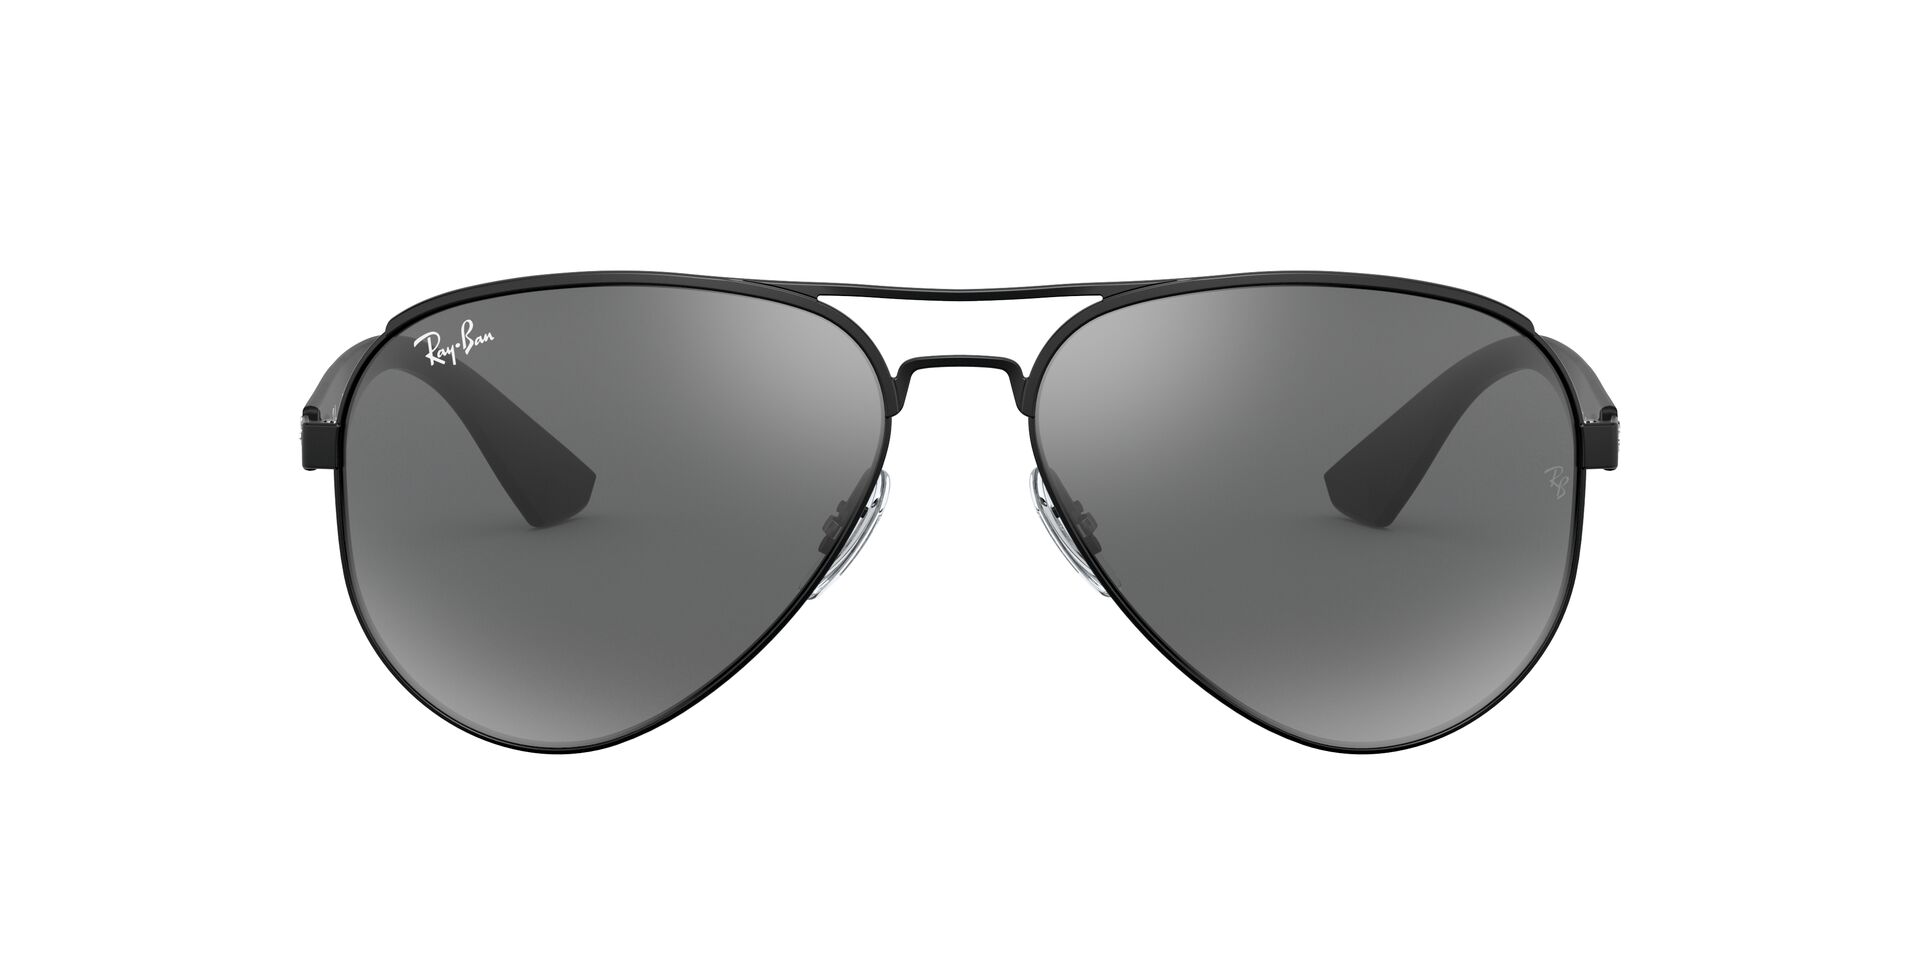 Matte black Ray Ban Wayfarer sunglasses